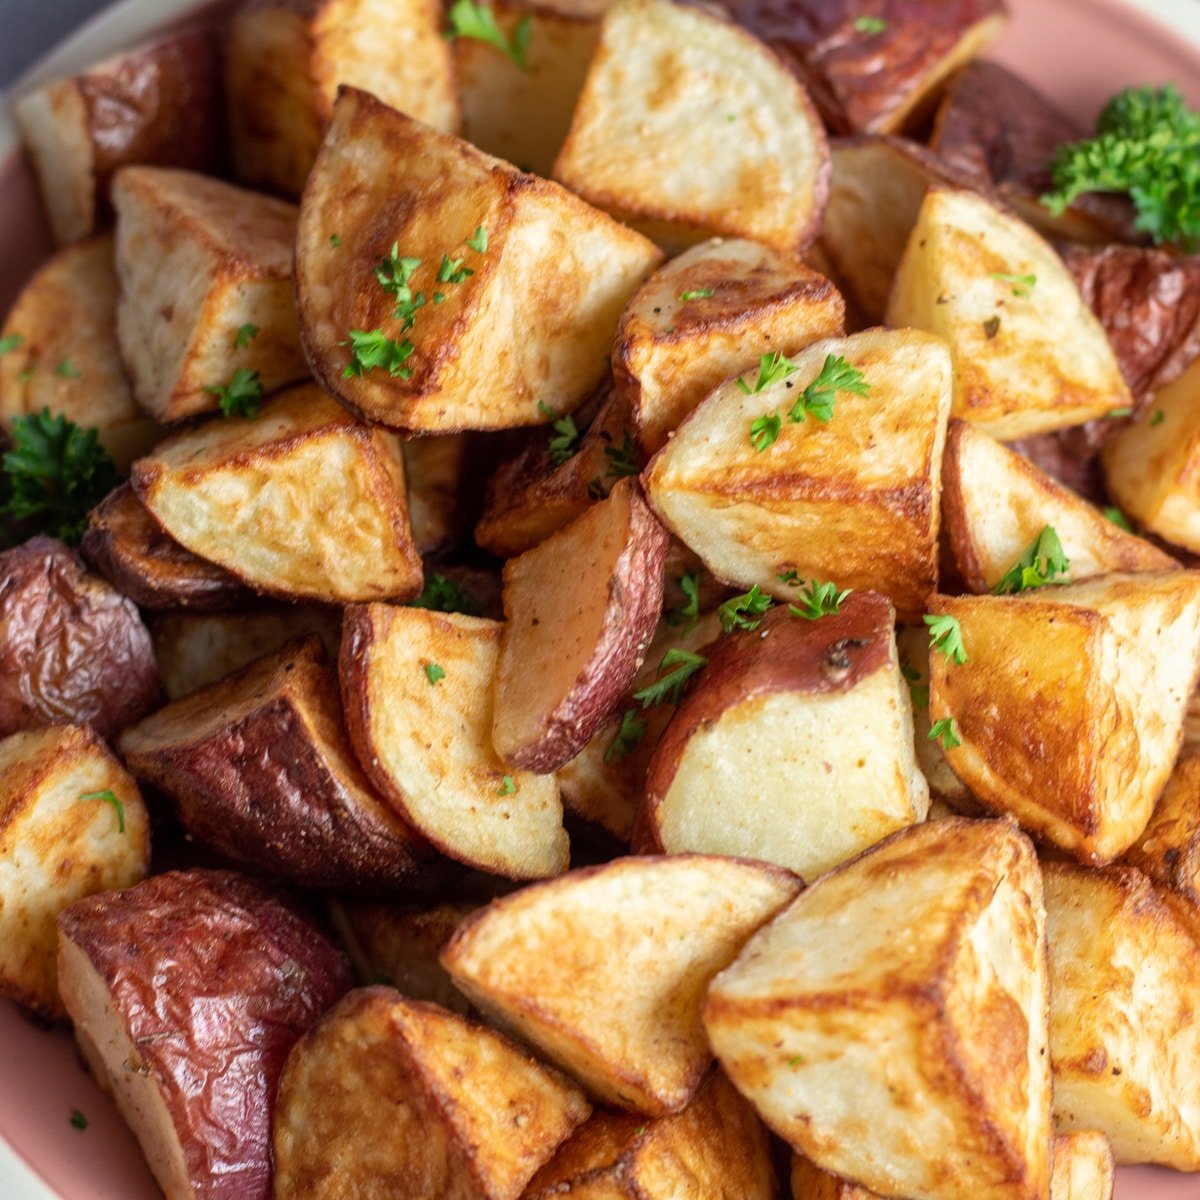 Pommes de terre rouges rôties parfaitement croustillantes empilées sur une assiette pour servir.